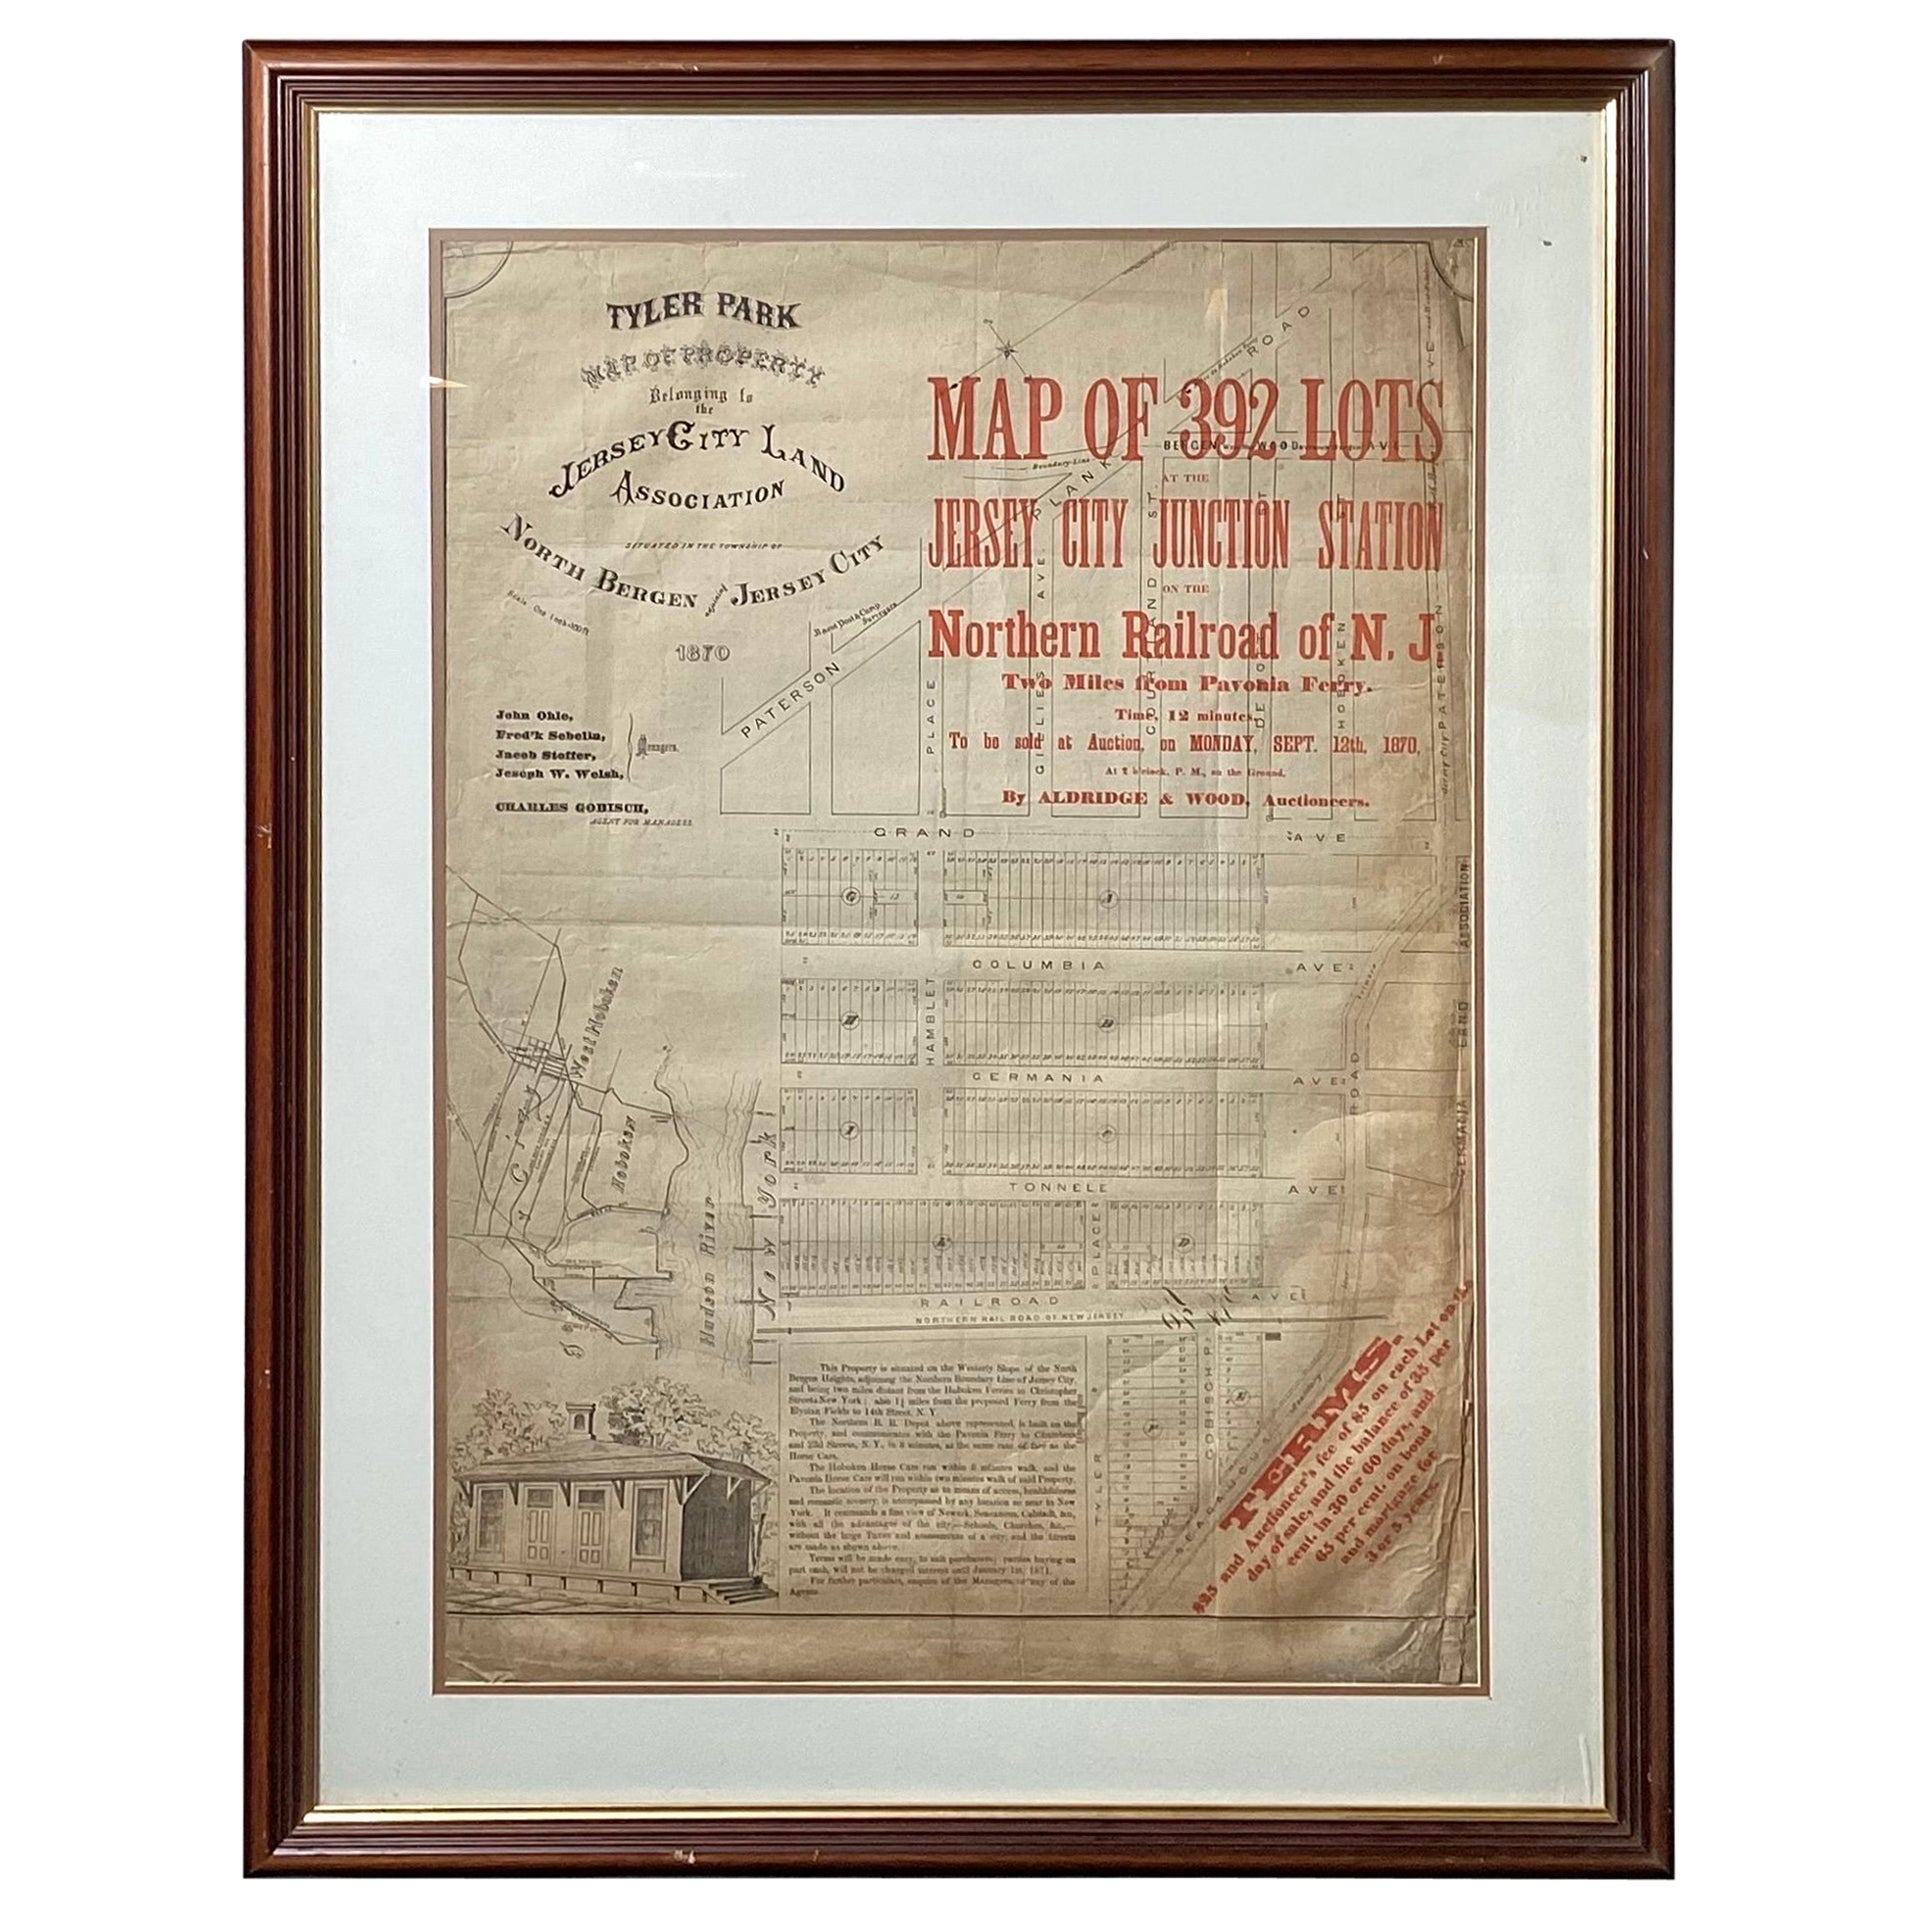 Survey d'une carte de la terre originale encadrée de Tyler Park, Jersey City Railroad